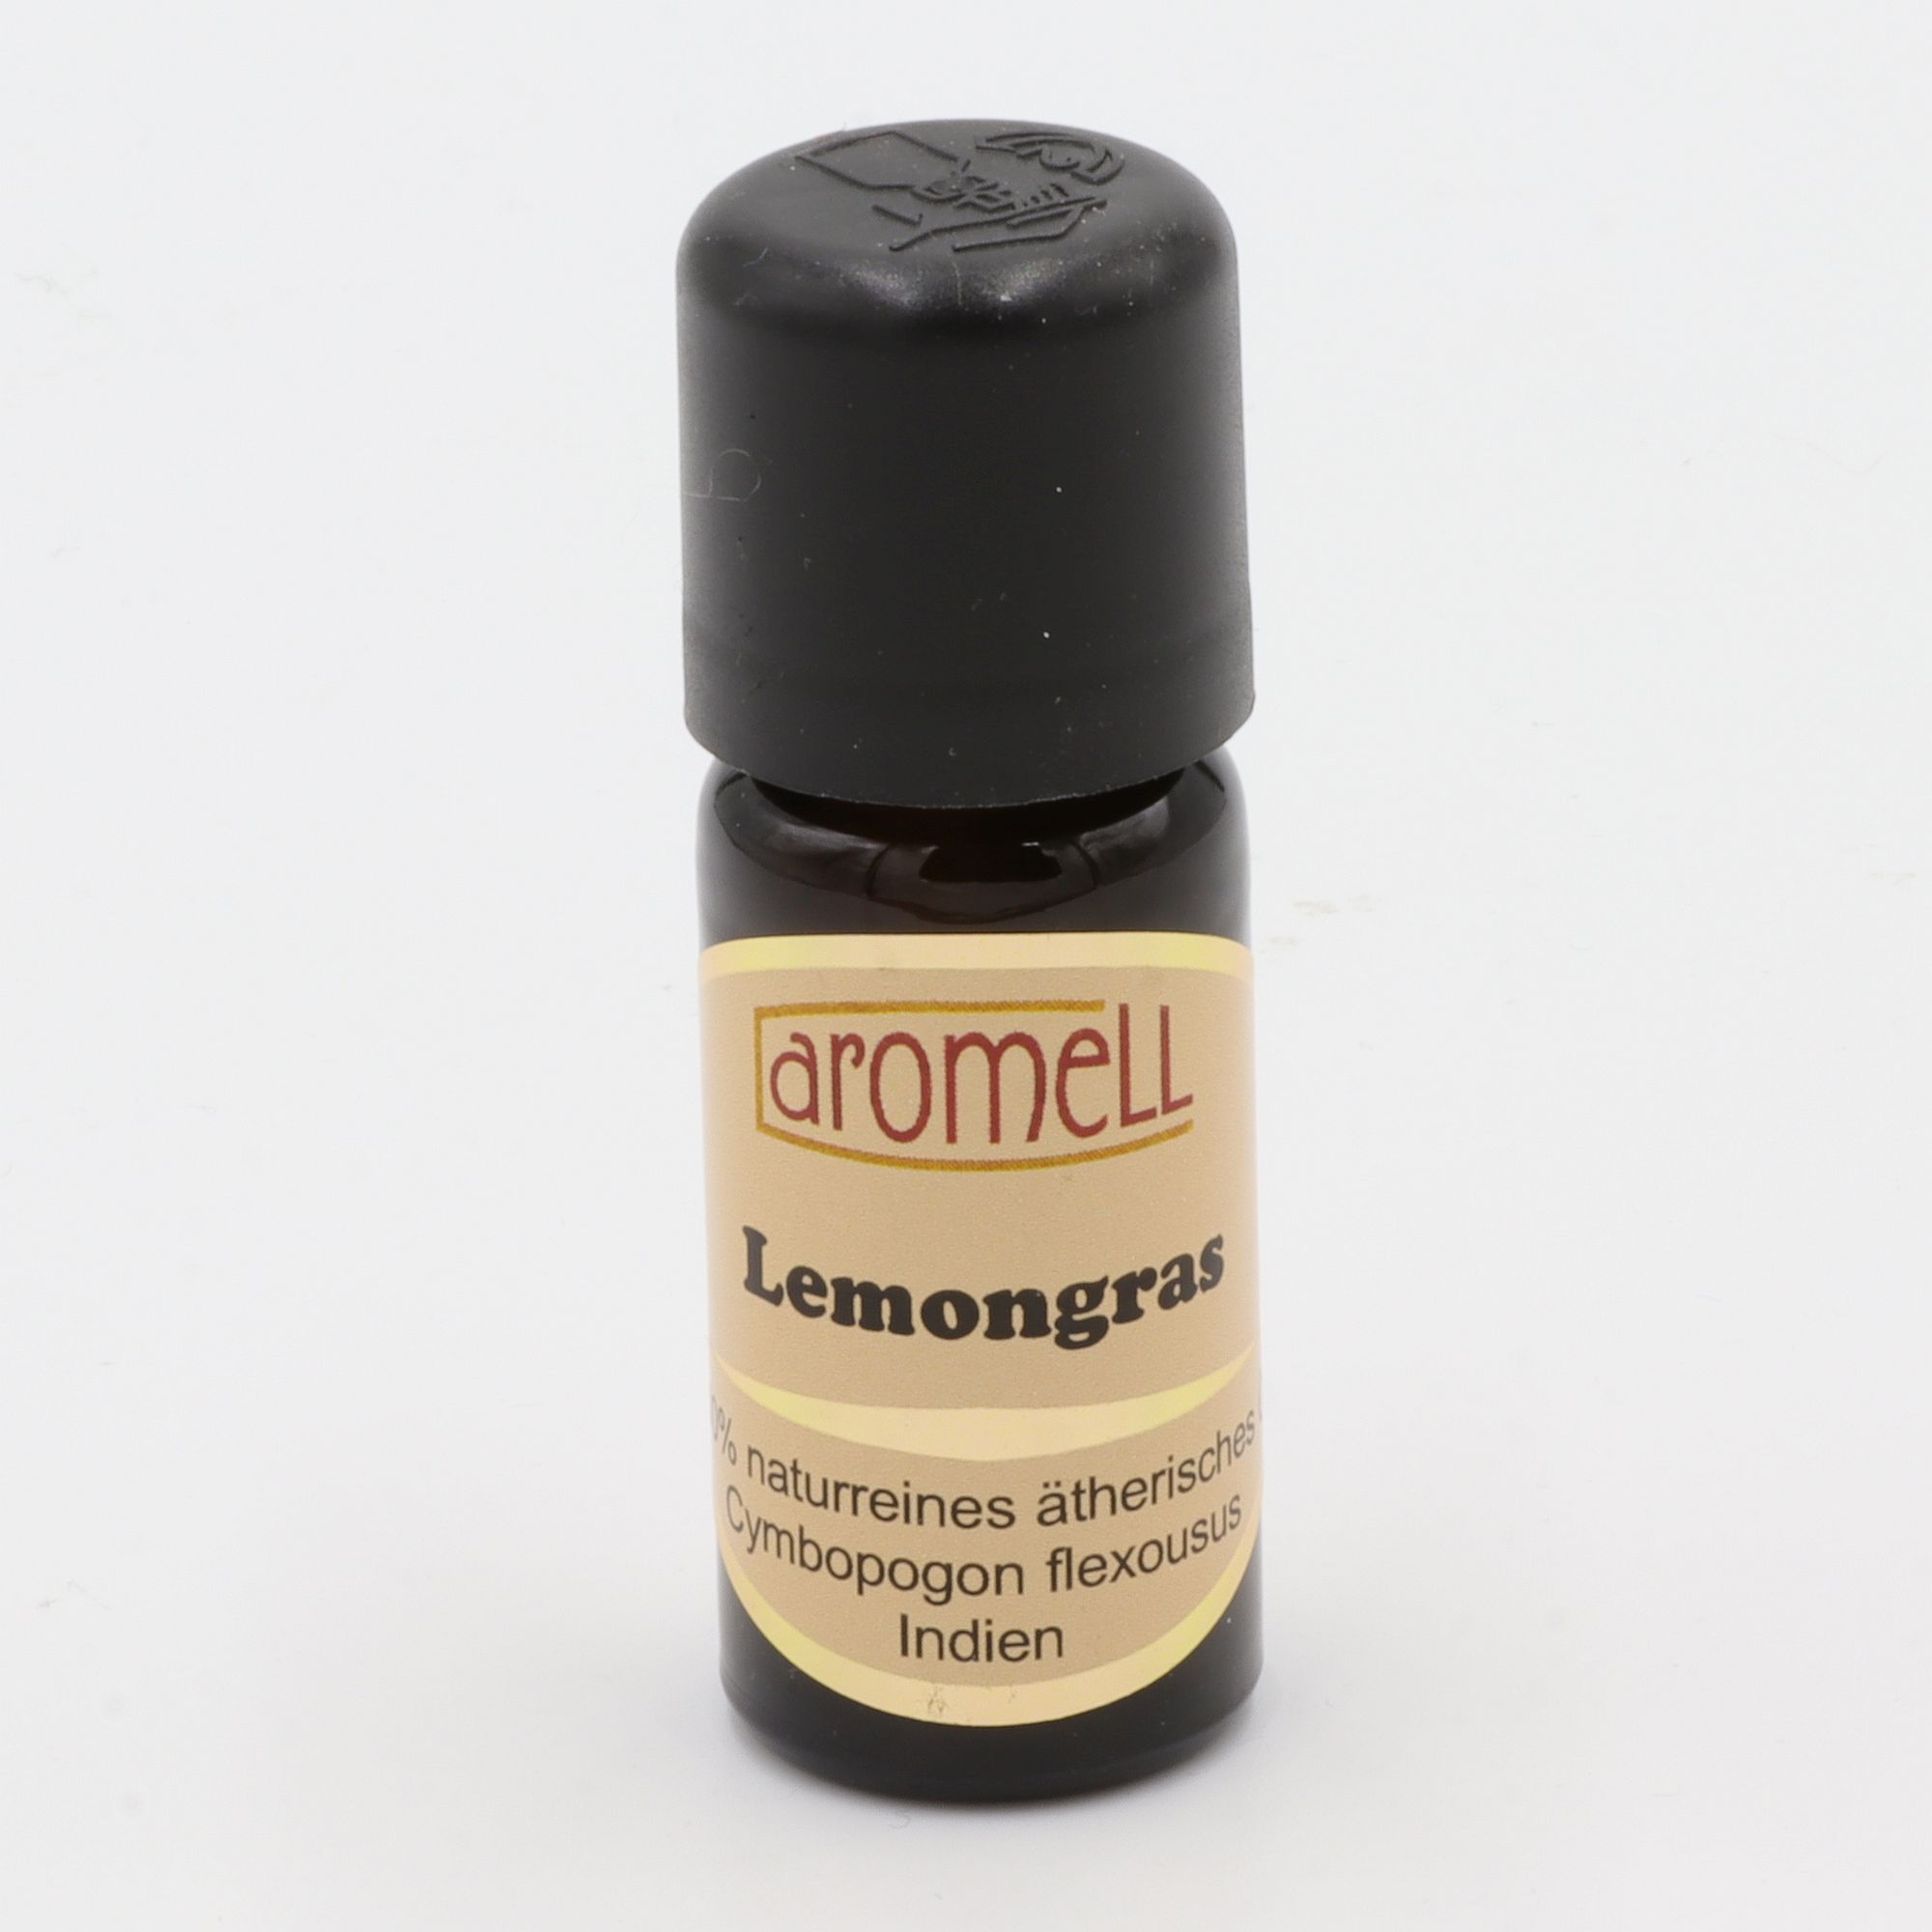 Ätherisches Öl - Aromell - Lemongras - 100% naturrein - Cymbopogon Flexousus aus Indien - aromatischer Raumduft für Dein Wohlbefinden - Glas mit Tropfendosierung